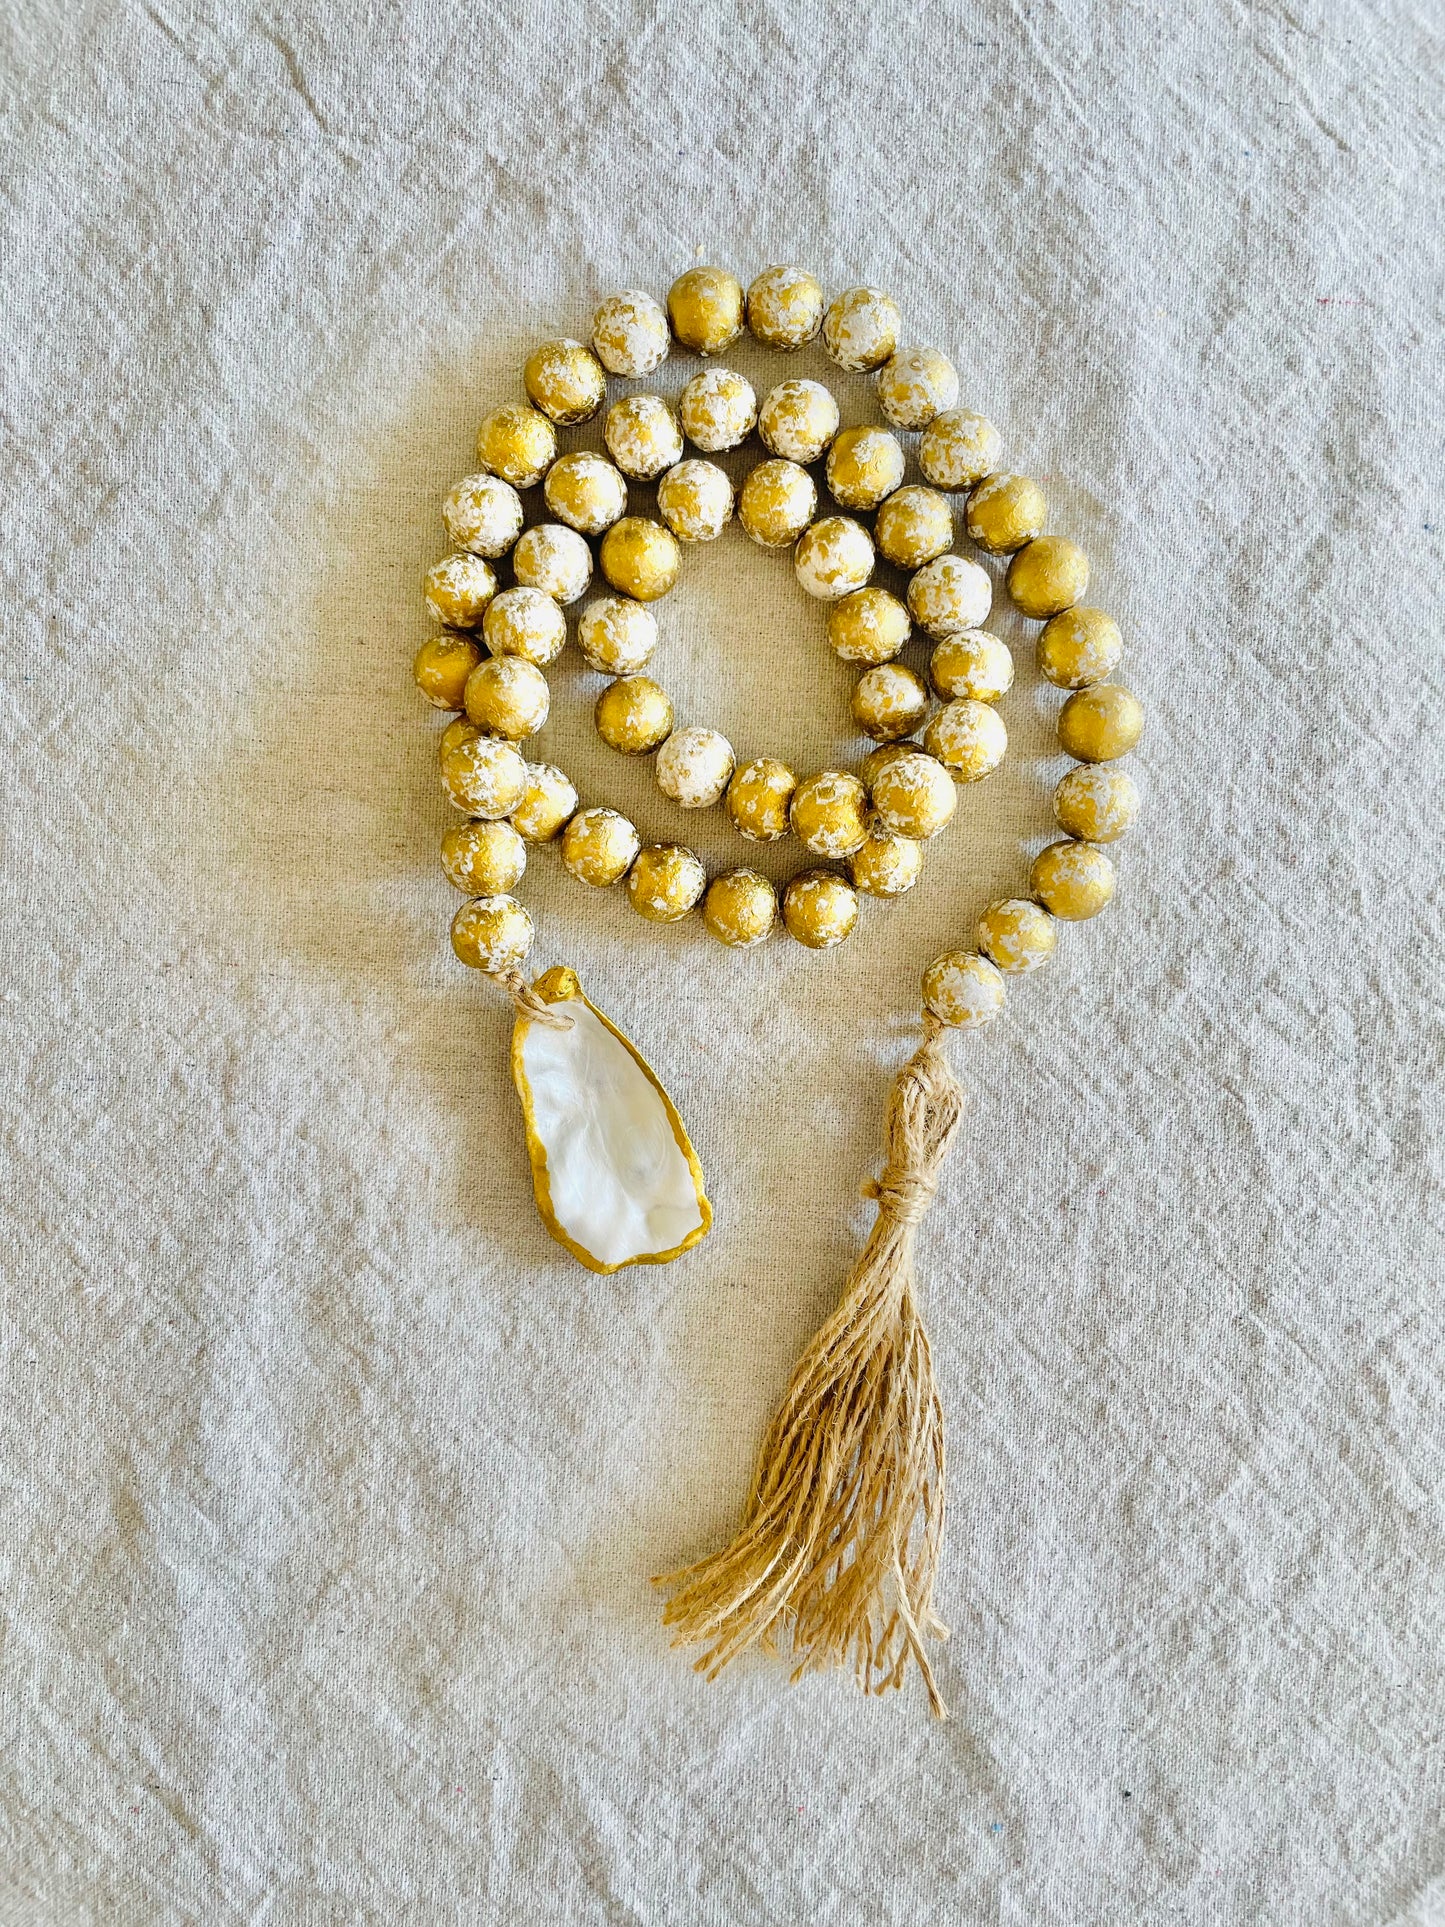 CUSTOM ORDER: Oyster Blessing Beads